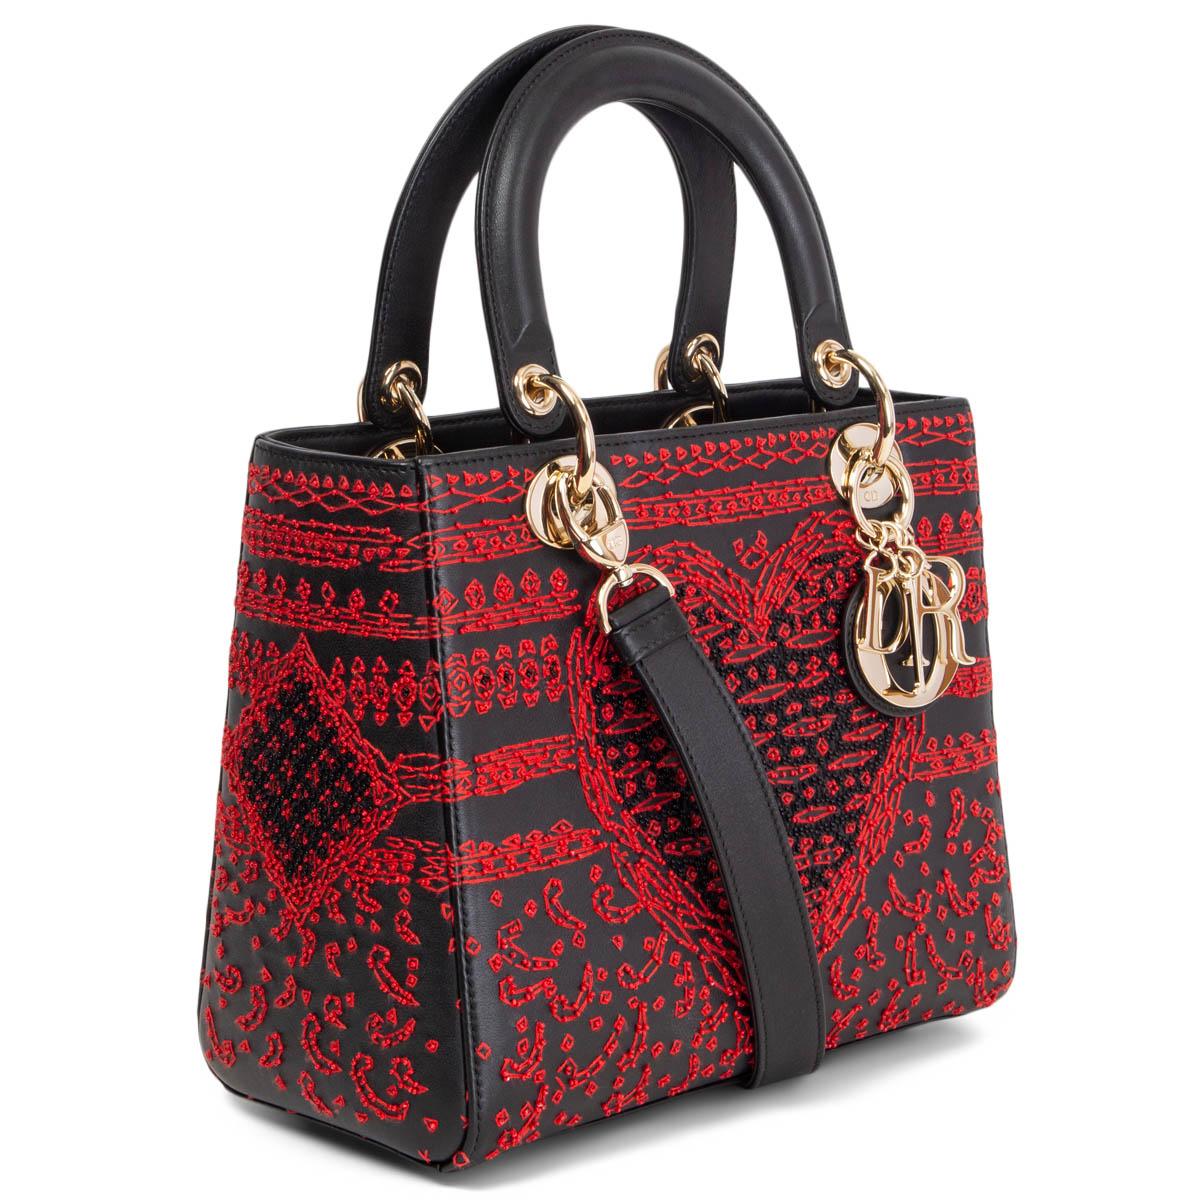 100% authentique Christian Dior Limited Edition Lady Dior sac à bandoulière en cuir de veau noir orné de perles rouges et noires et de broderies en forme de cœur et de trèfle. Le sac est doté de ferrures de couleur or clair. Il s'ouvre par une